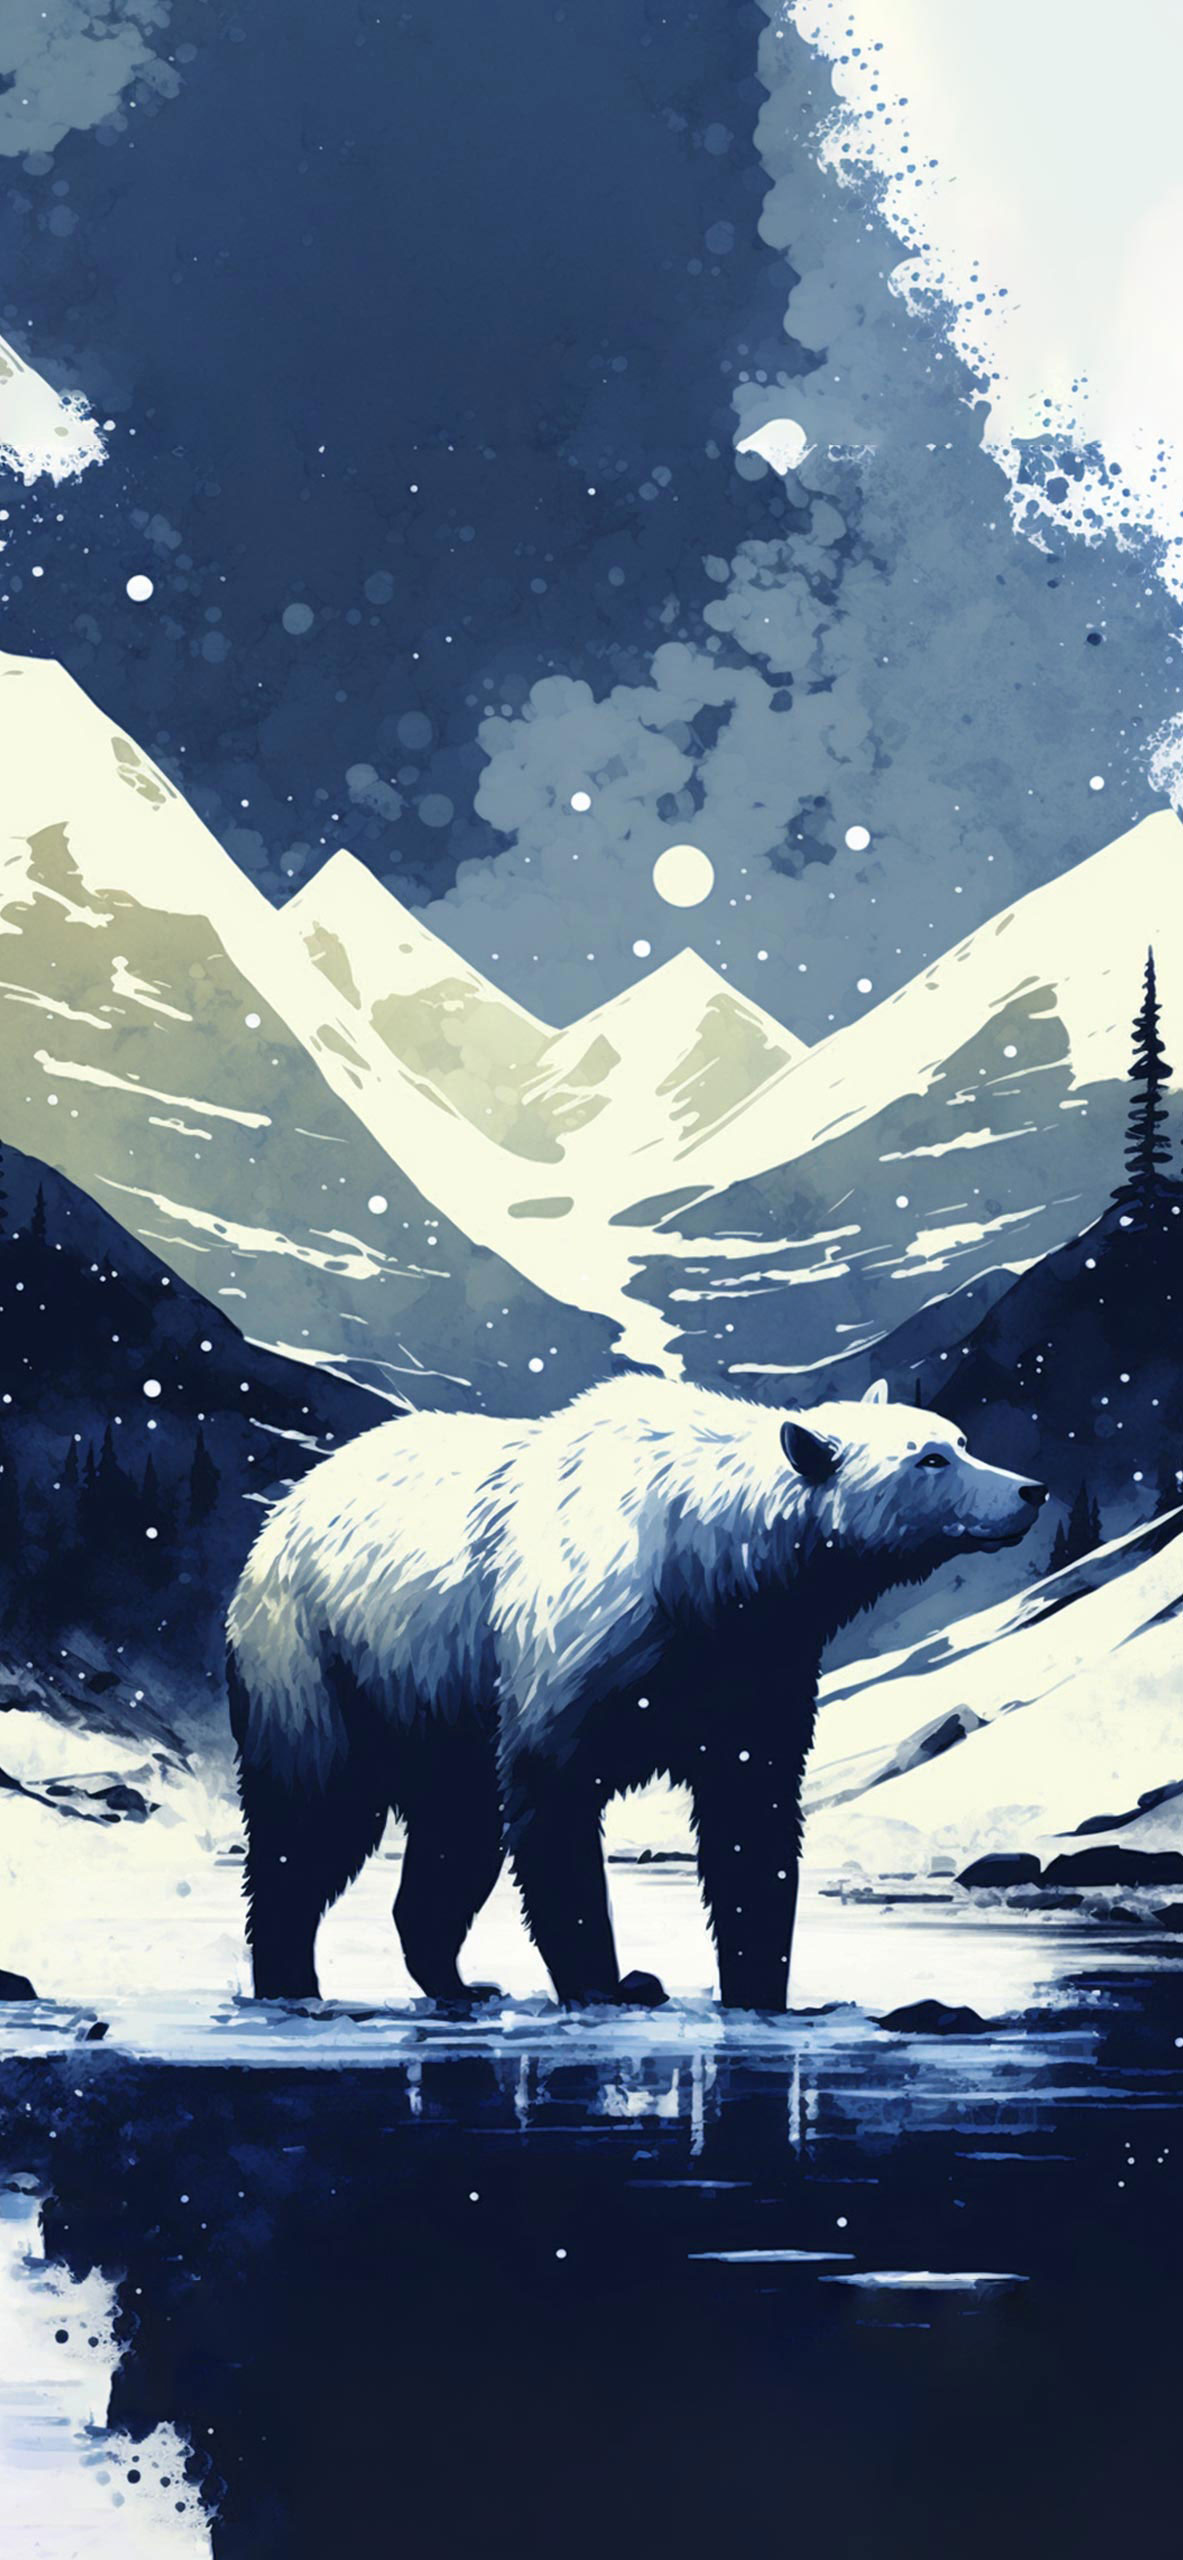 Polar Bear & Mountains Wallpaper - Polar Bear Wallpaper iPhone